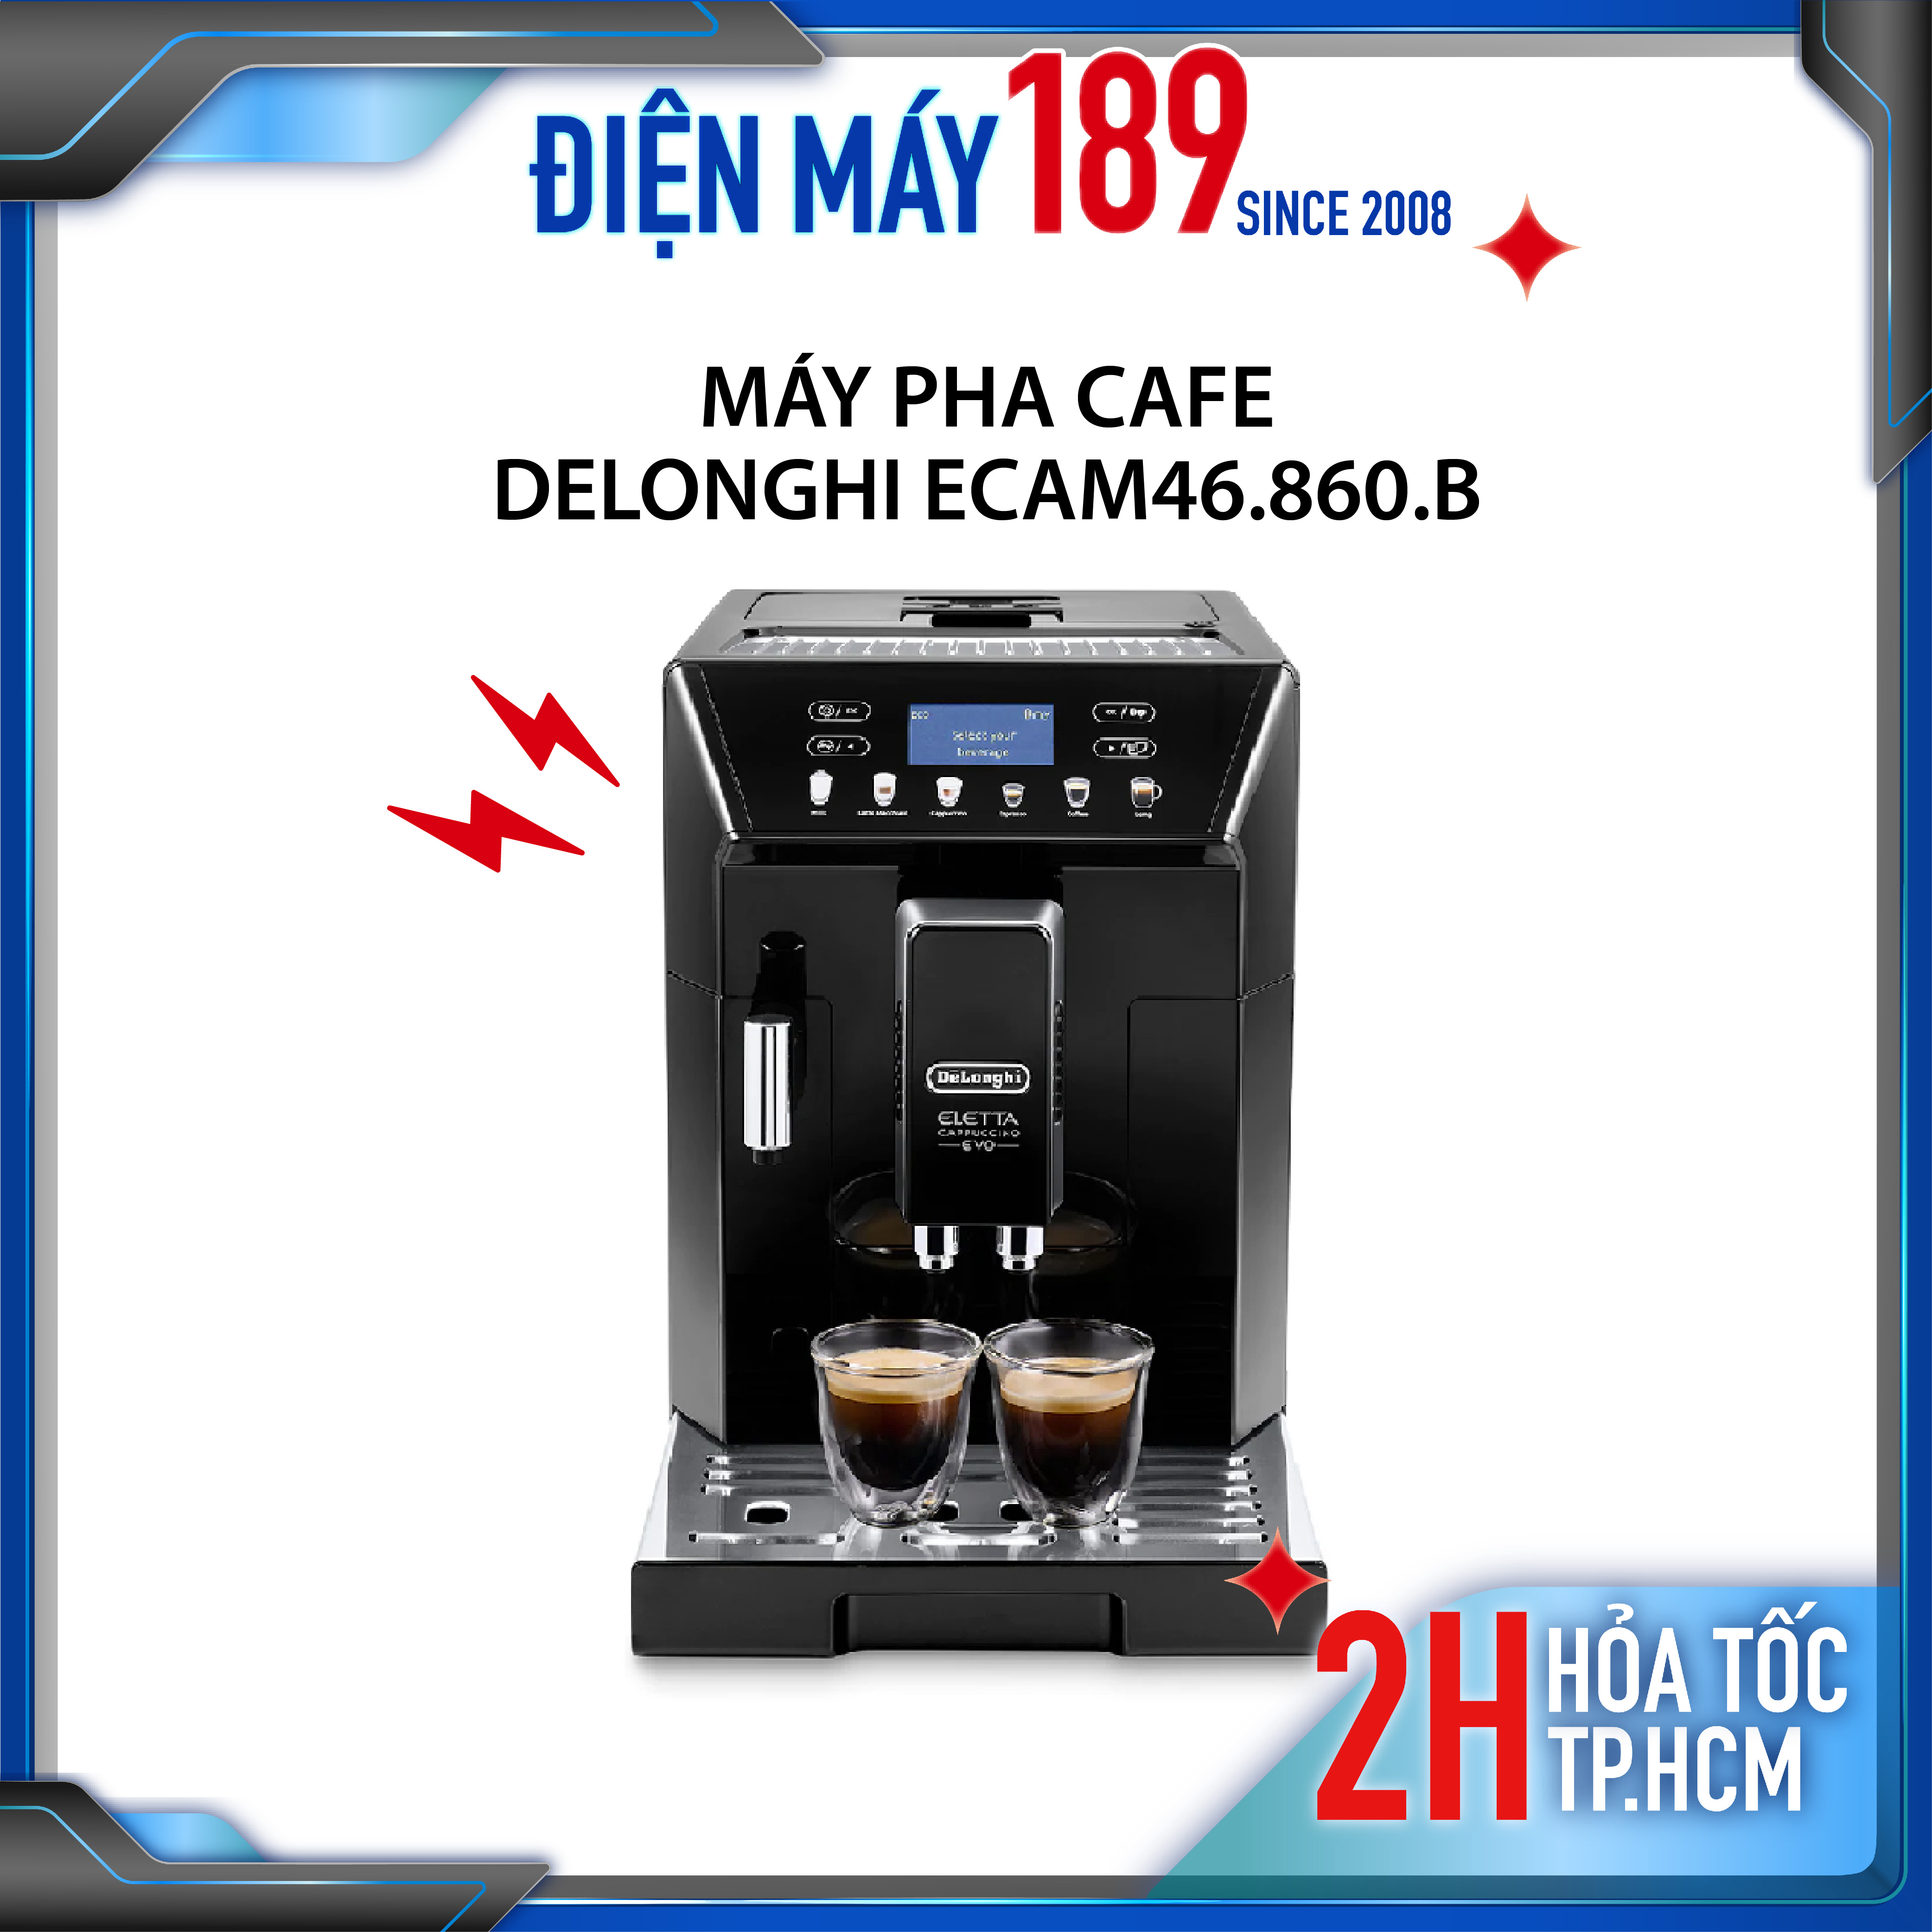 Máy pha cafe Delonghi ECAM46.860.B - xuất xứ Ý- bảo hành 1 năm- máy pha cafe tự động - cho phép pha 2 tách - màn hình LCD